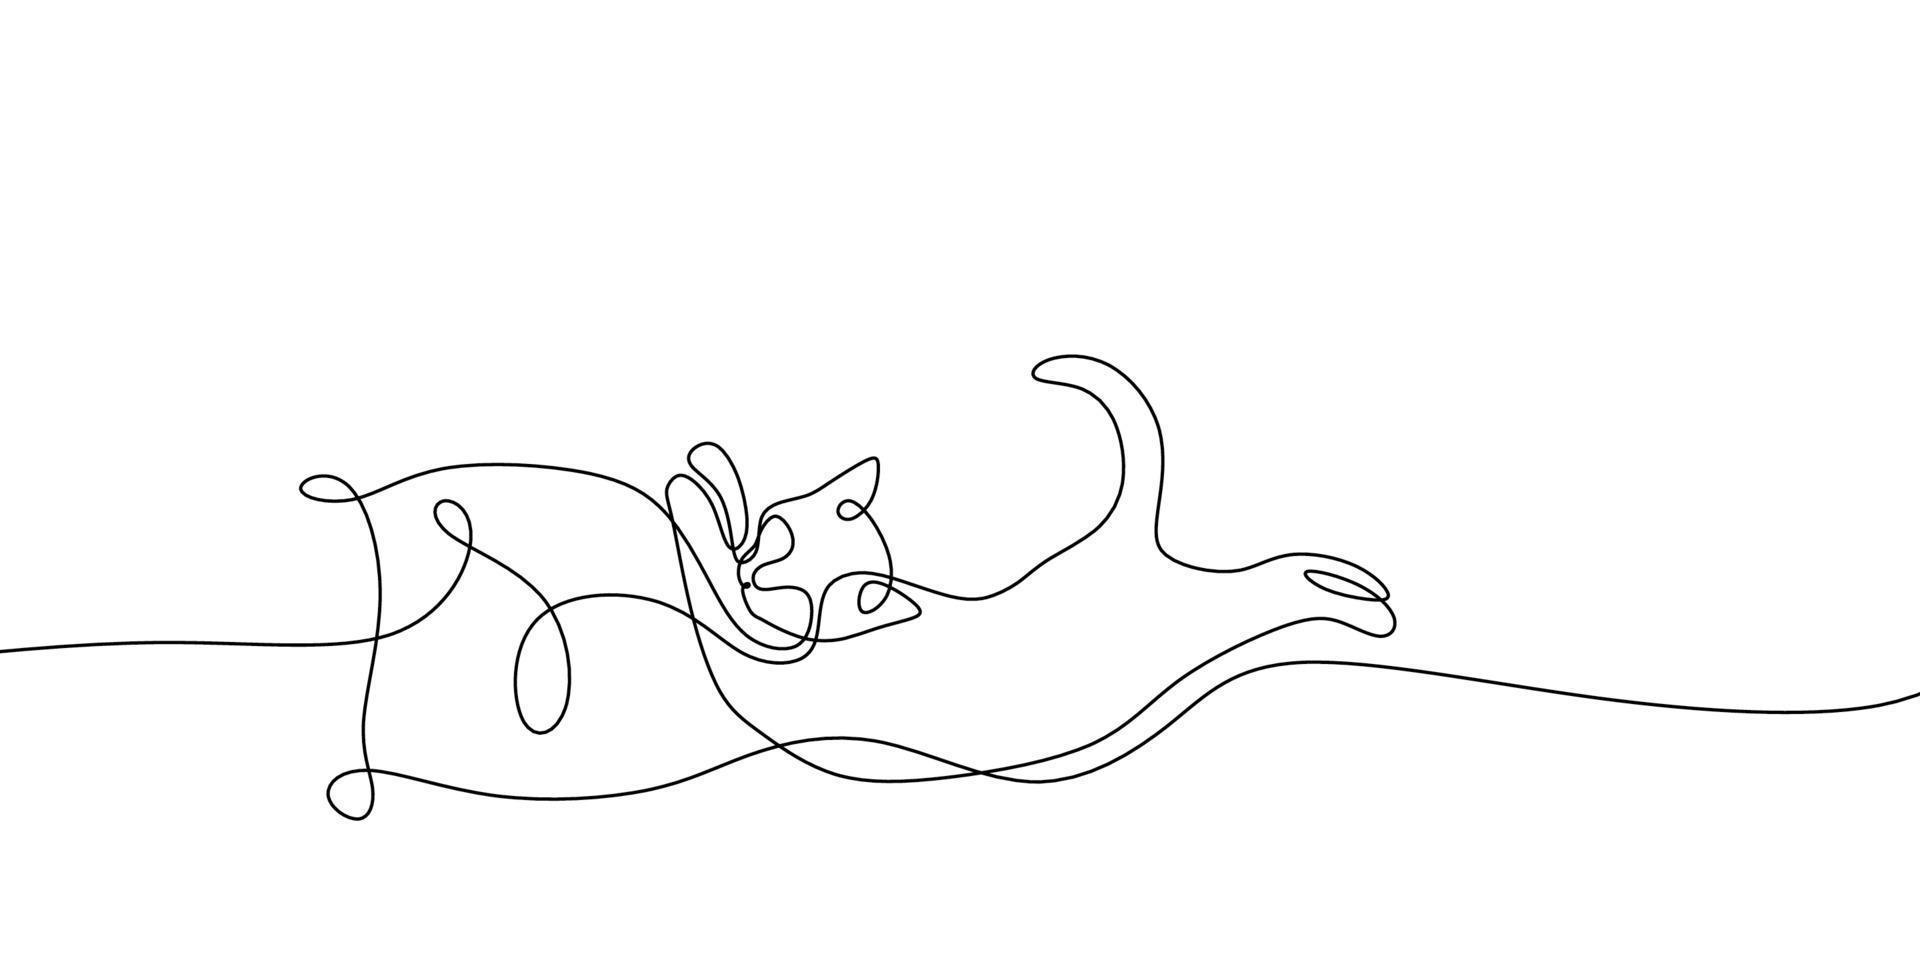 kontinuierliche einzeilige Zeichnung der schlafenden Katze auf dem Kissen. abstrakter minimalistischer Stil. schlafende Katze im durchgehenden einzeiligen Kunststil. Katze mit gekräuseltem Schwanz. Kätzchenzeichnung mit einer einzigen Strichzeichnung. vektor